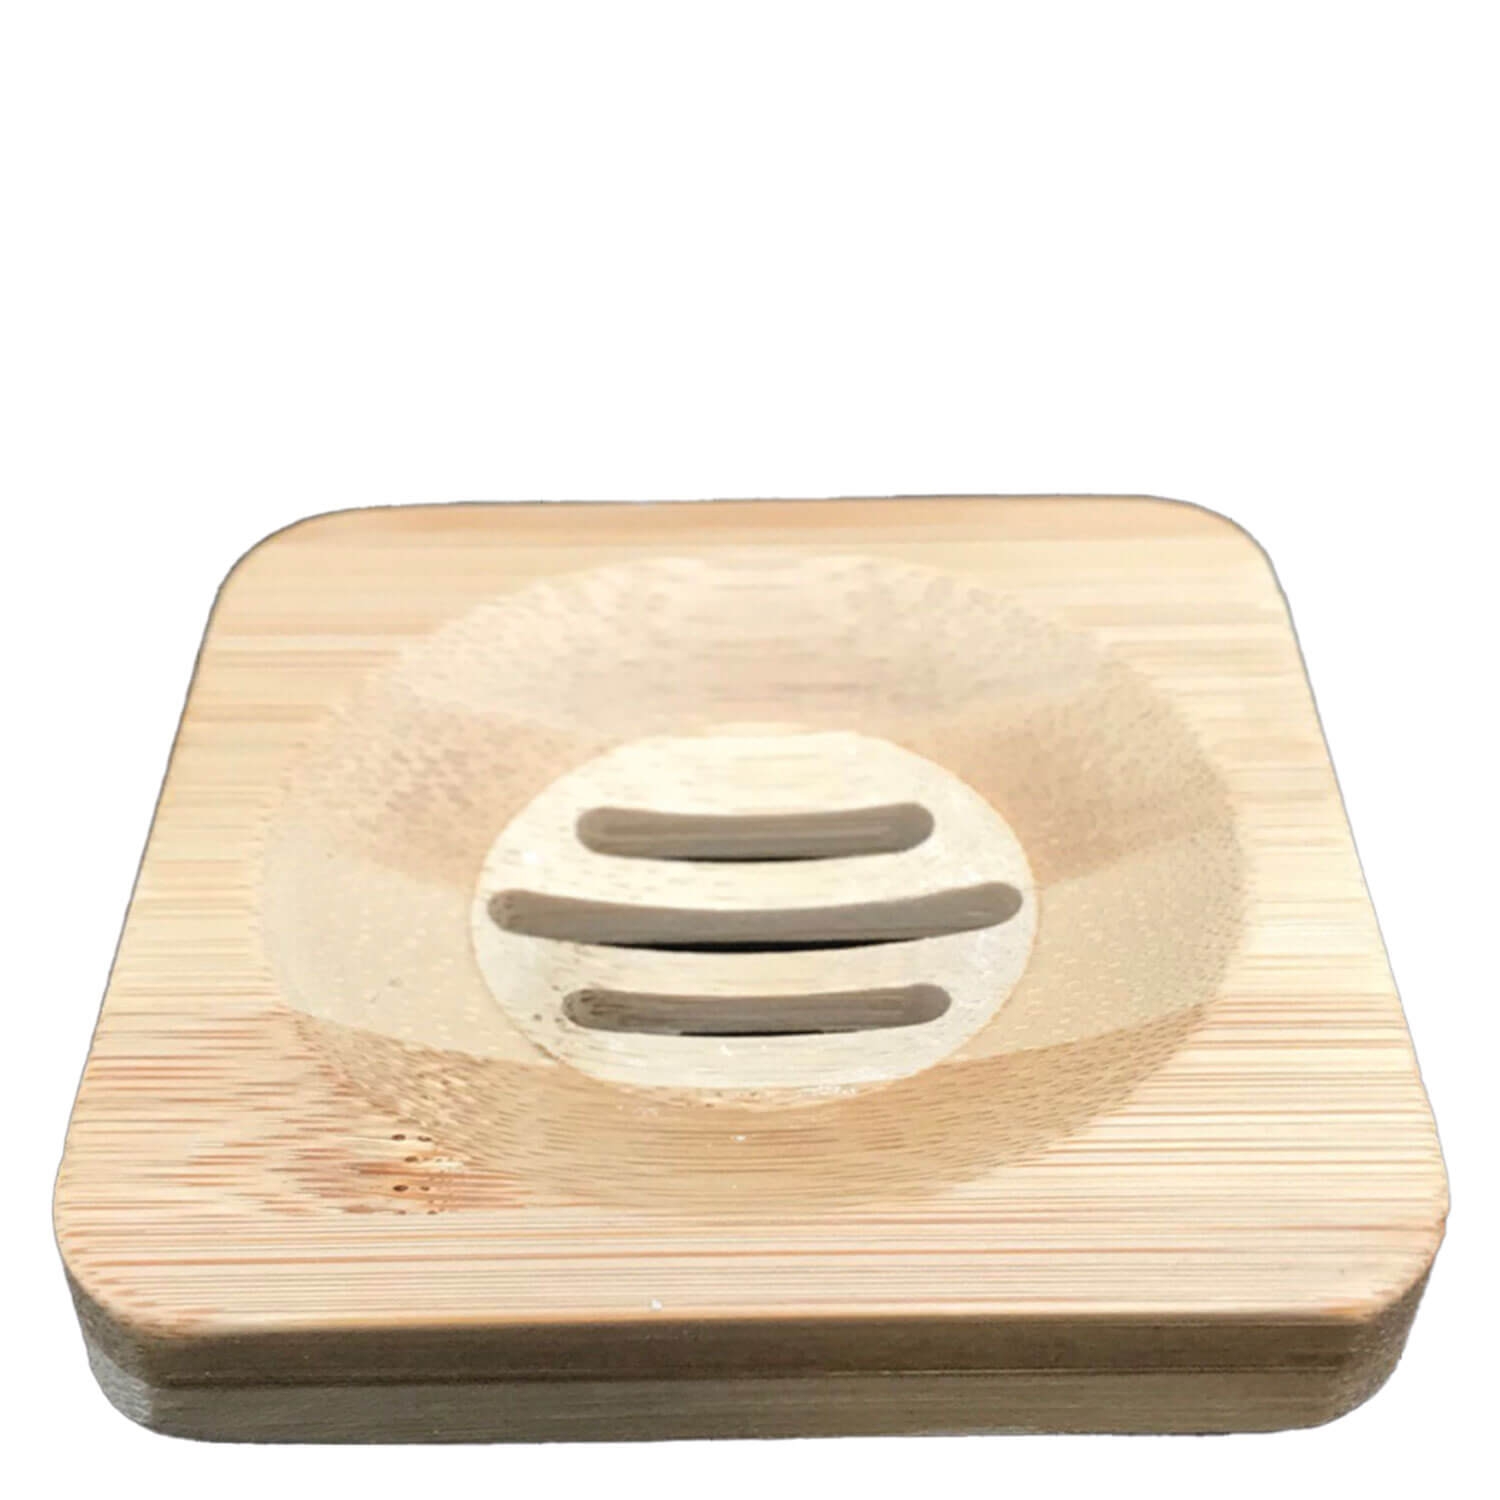 Produktbild von HiBAR - Seifenschale aus Bambus